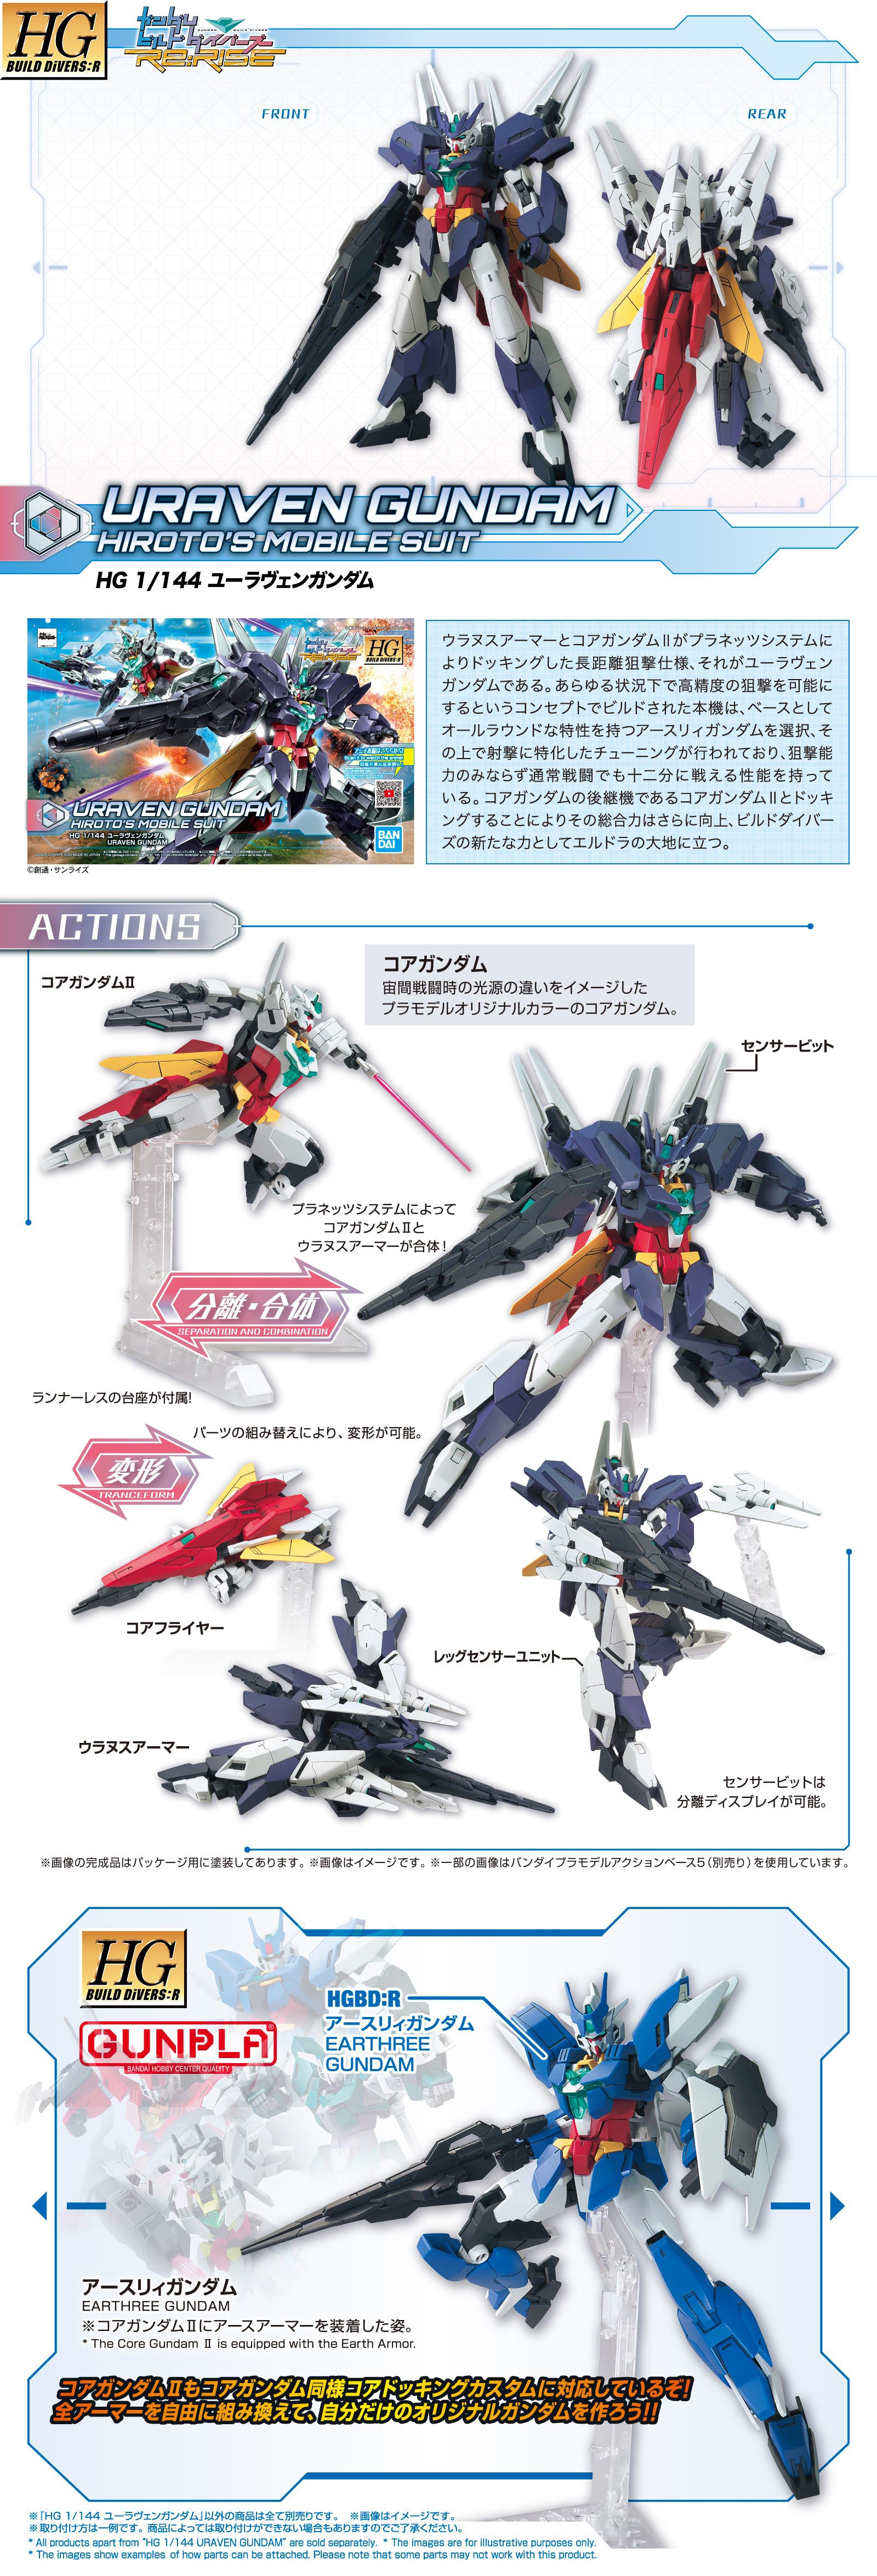 HG Uraven Gundam 1/144